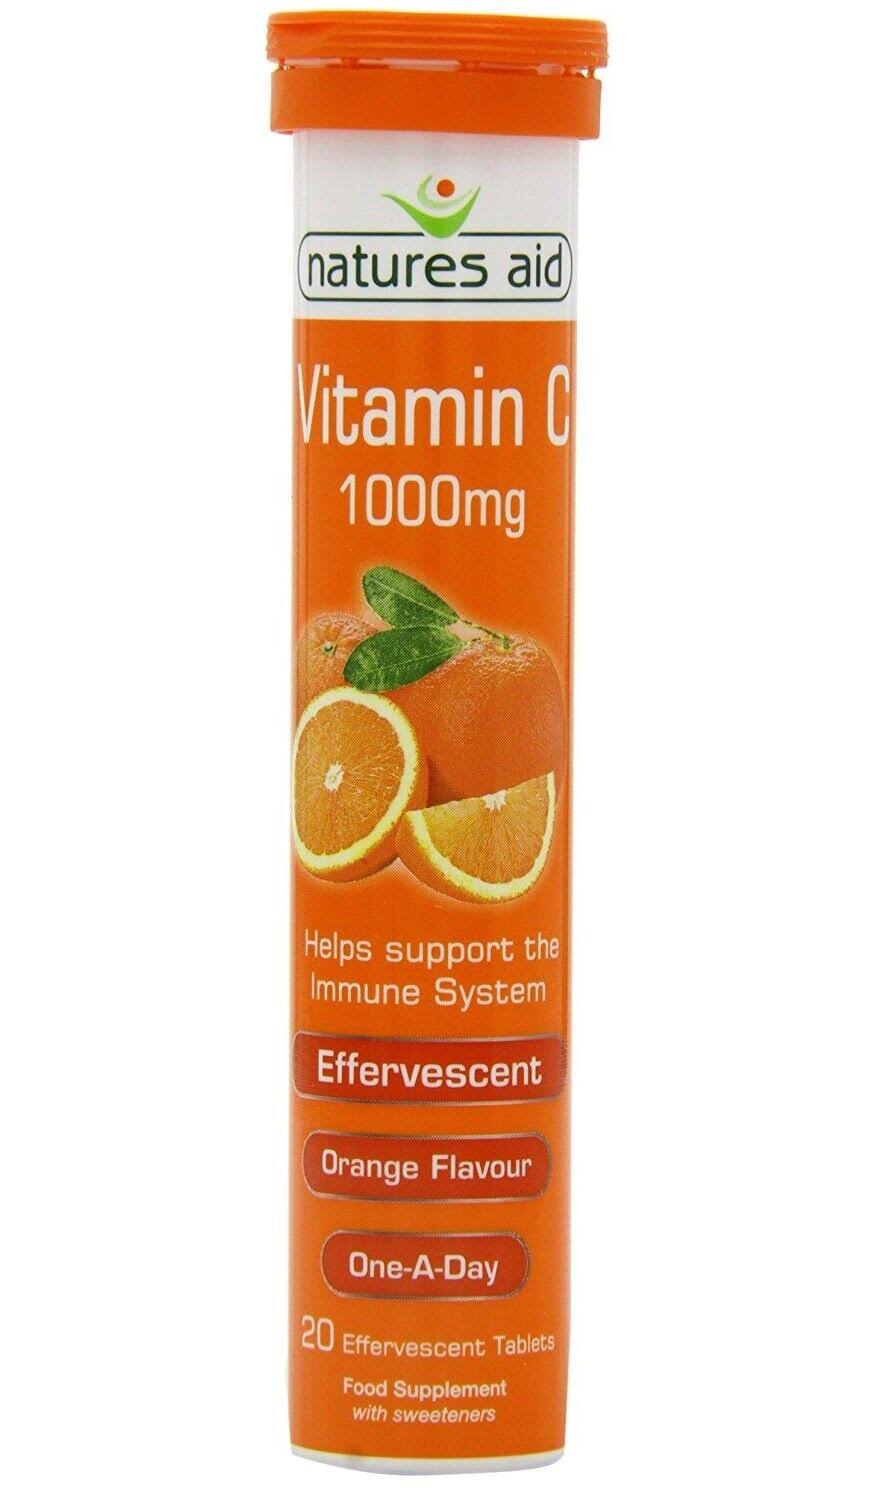 Natures Aid Vitamin C Effervescent - Orange